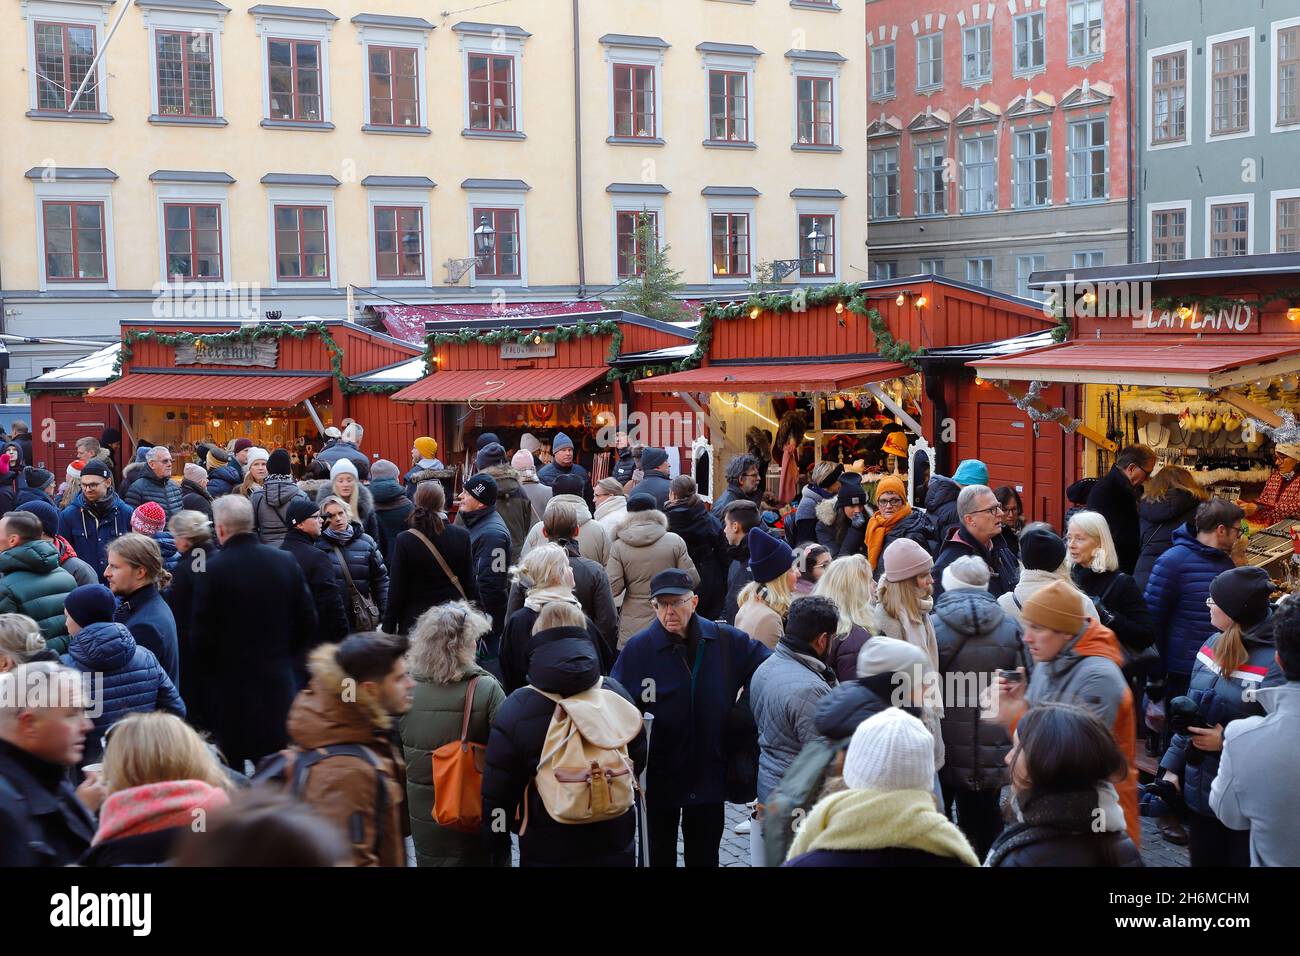 Stoccolma, Svezia - 30 novembre 2019: Affollato mercatino di Natale in piazza Stortorget nel quartiere della città vecchia. Foto Stock